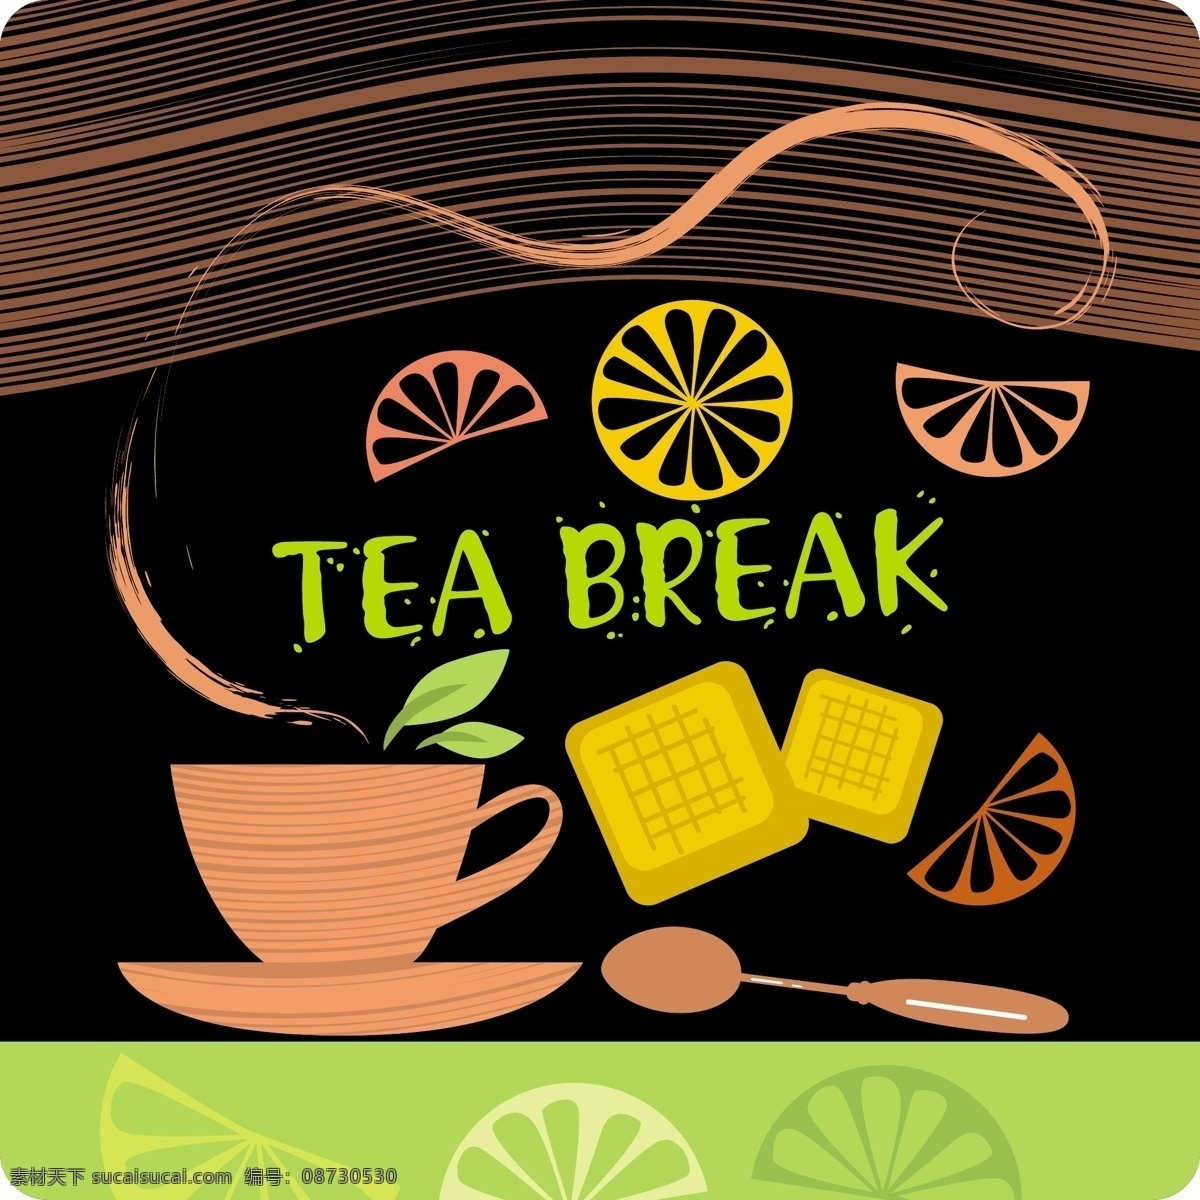 款 饮品 海报 茶杯 橙子 勺子 设计素材 矢量海报 矢量素材 线条 一款饮品海报 其他海报设计